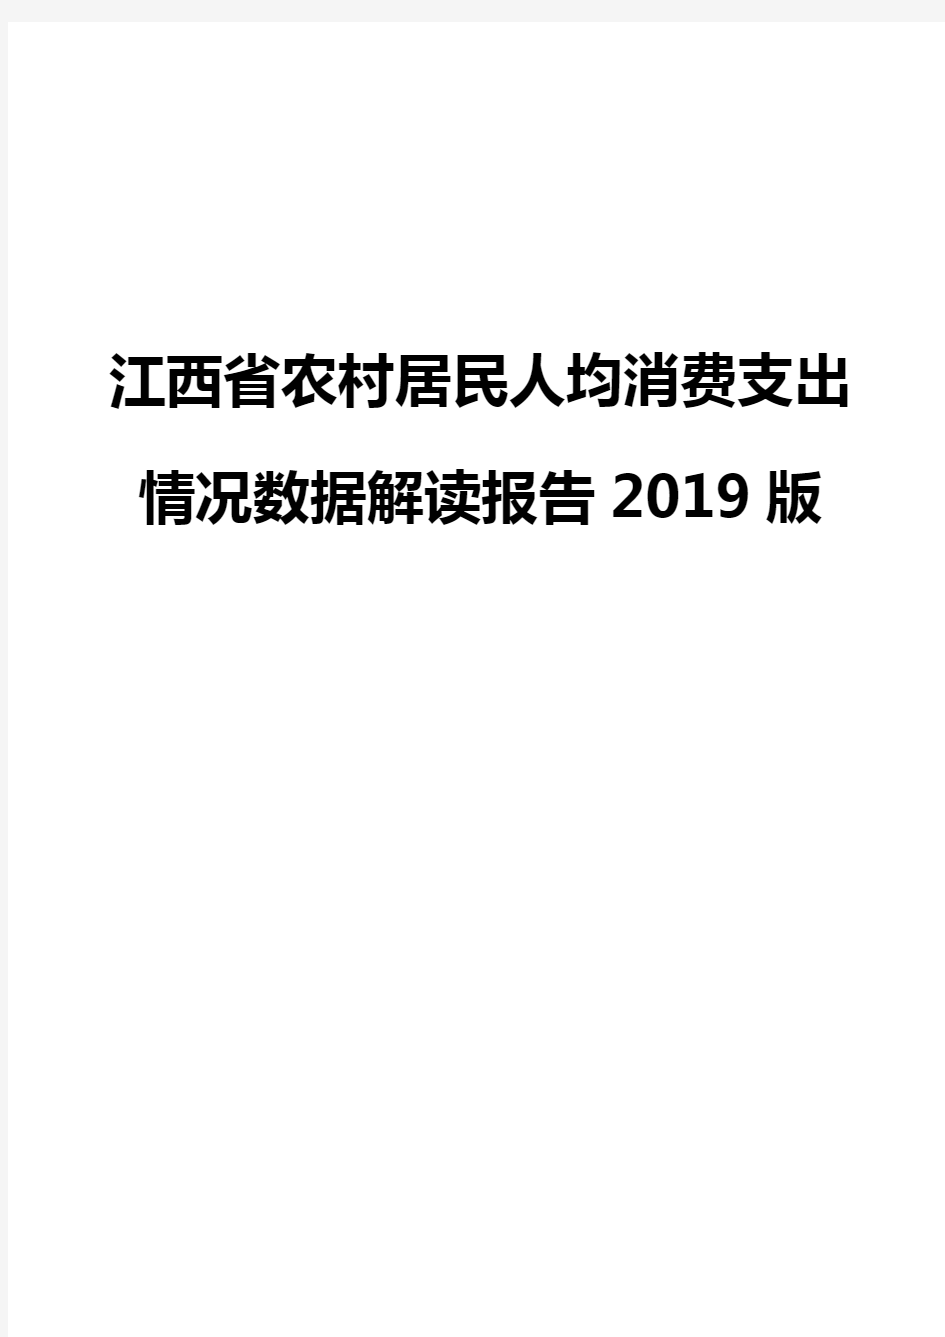 江西省农村居民人均消费支出情况数据解读报告2019版